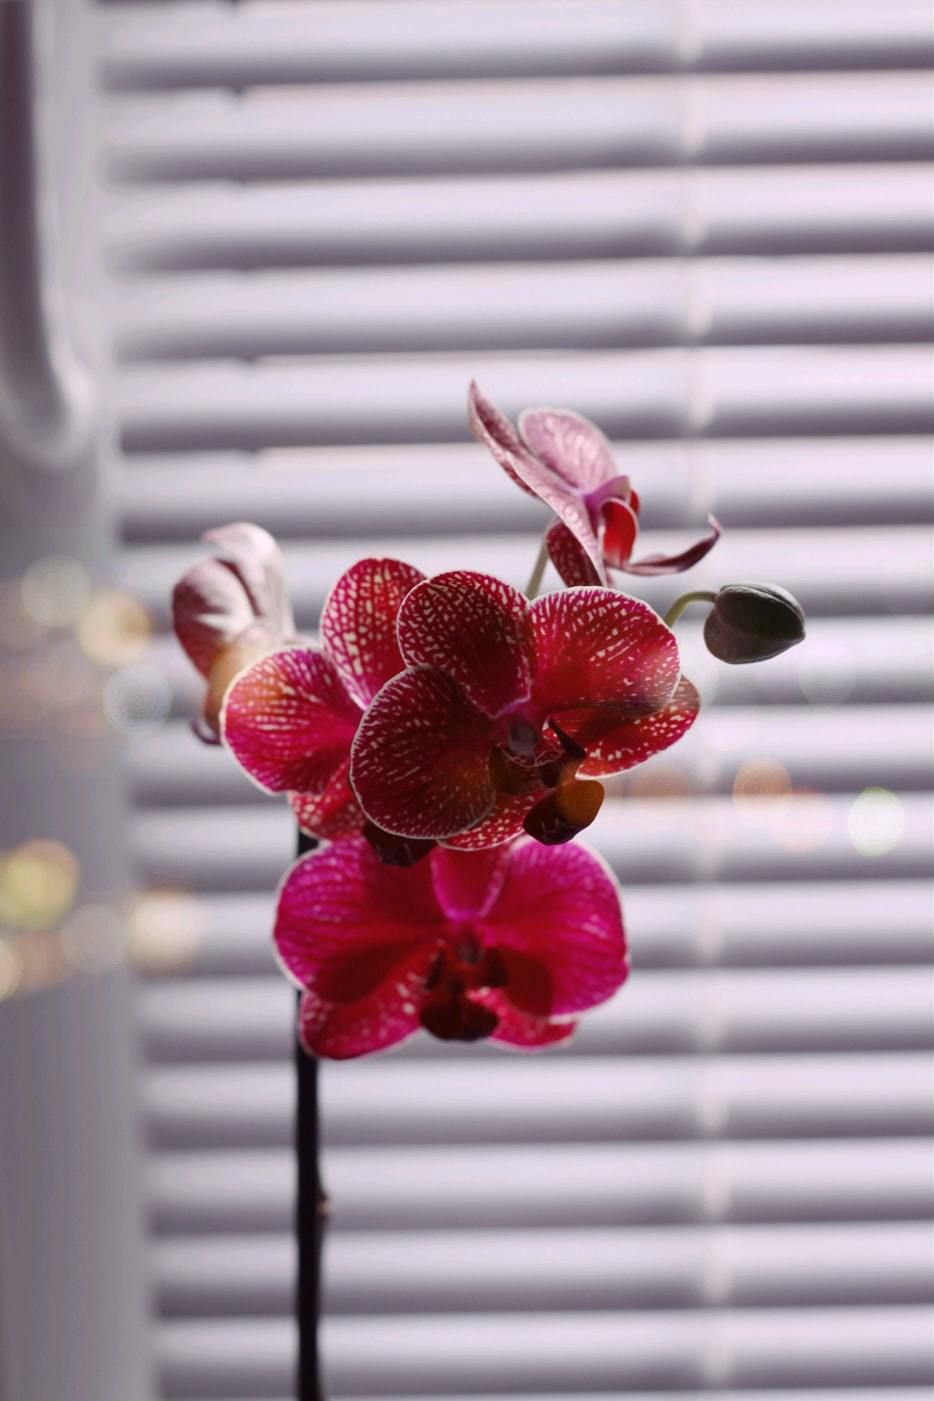 Прозорий горщик для орхідеї — необхідність чи данина моді. Чи дійсно для орхідеї потрібен тільки прозорий горщик? Спростовуємо відомий міф.